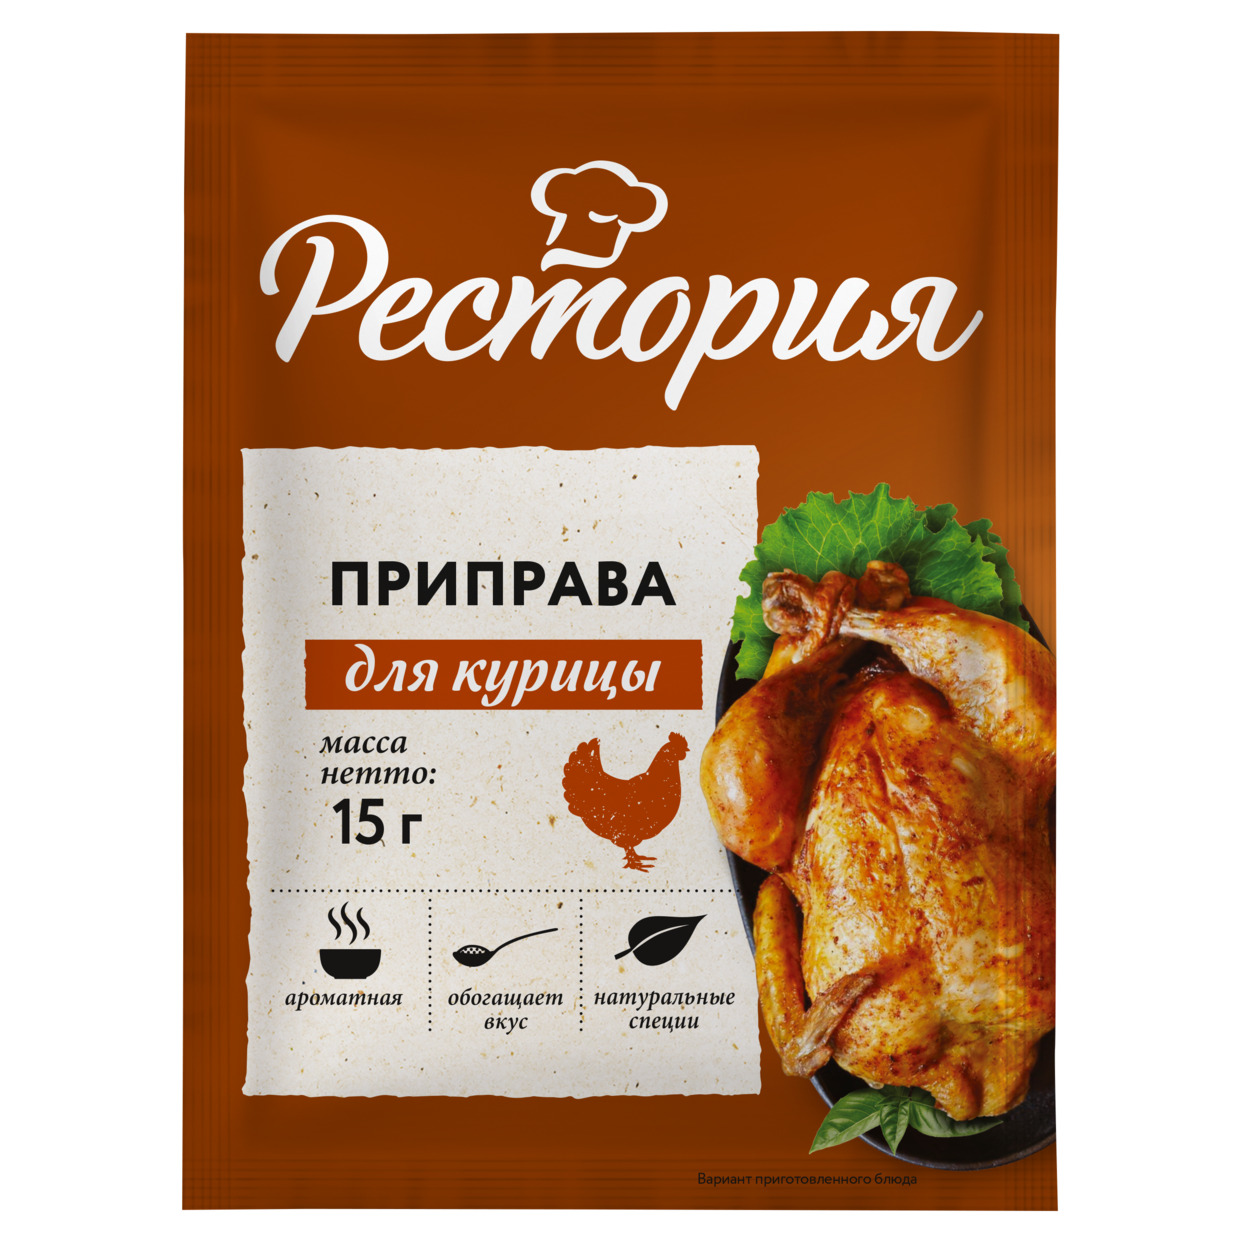 Рестория Приправа для курицы 15г по акции в Пятерочке